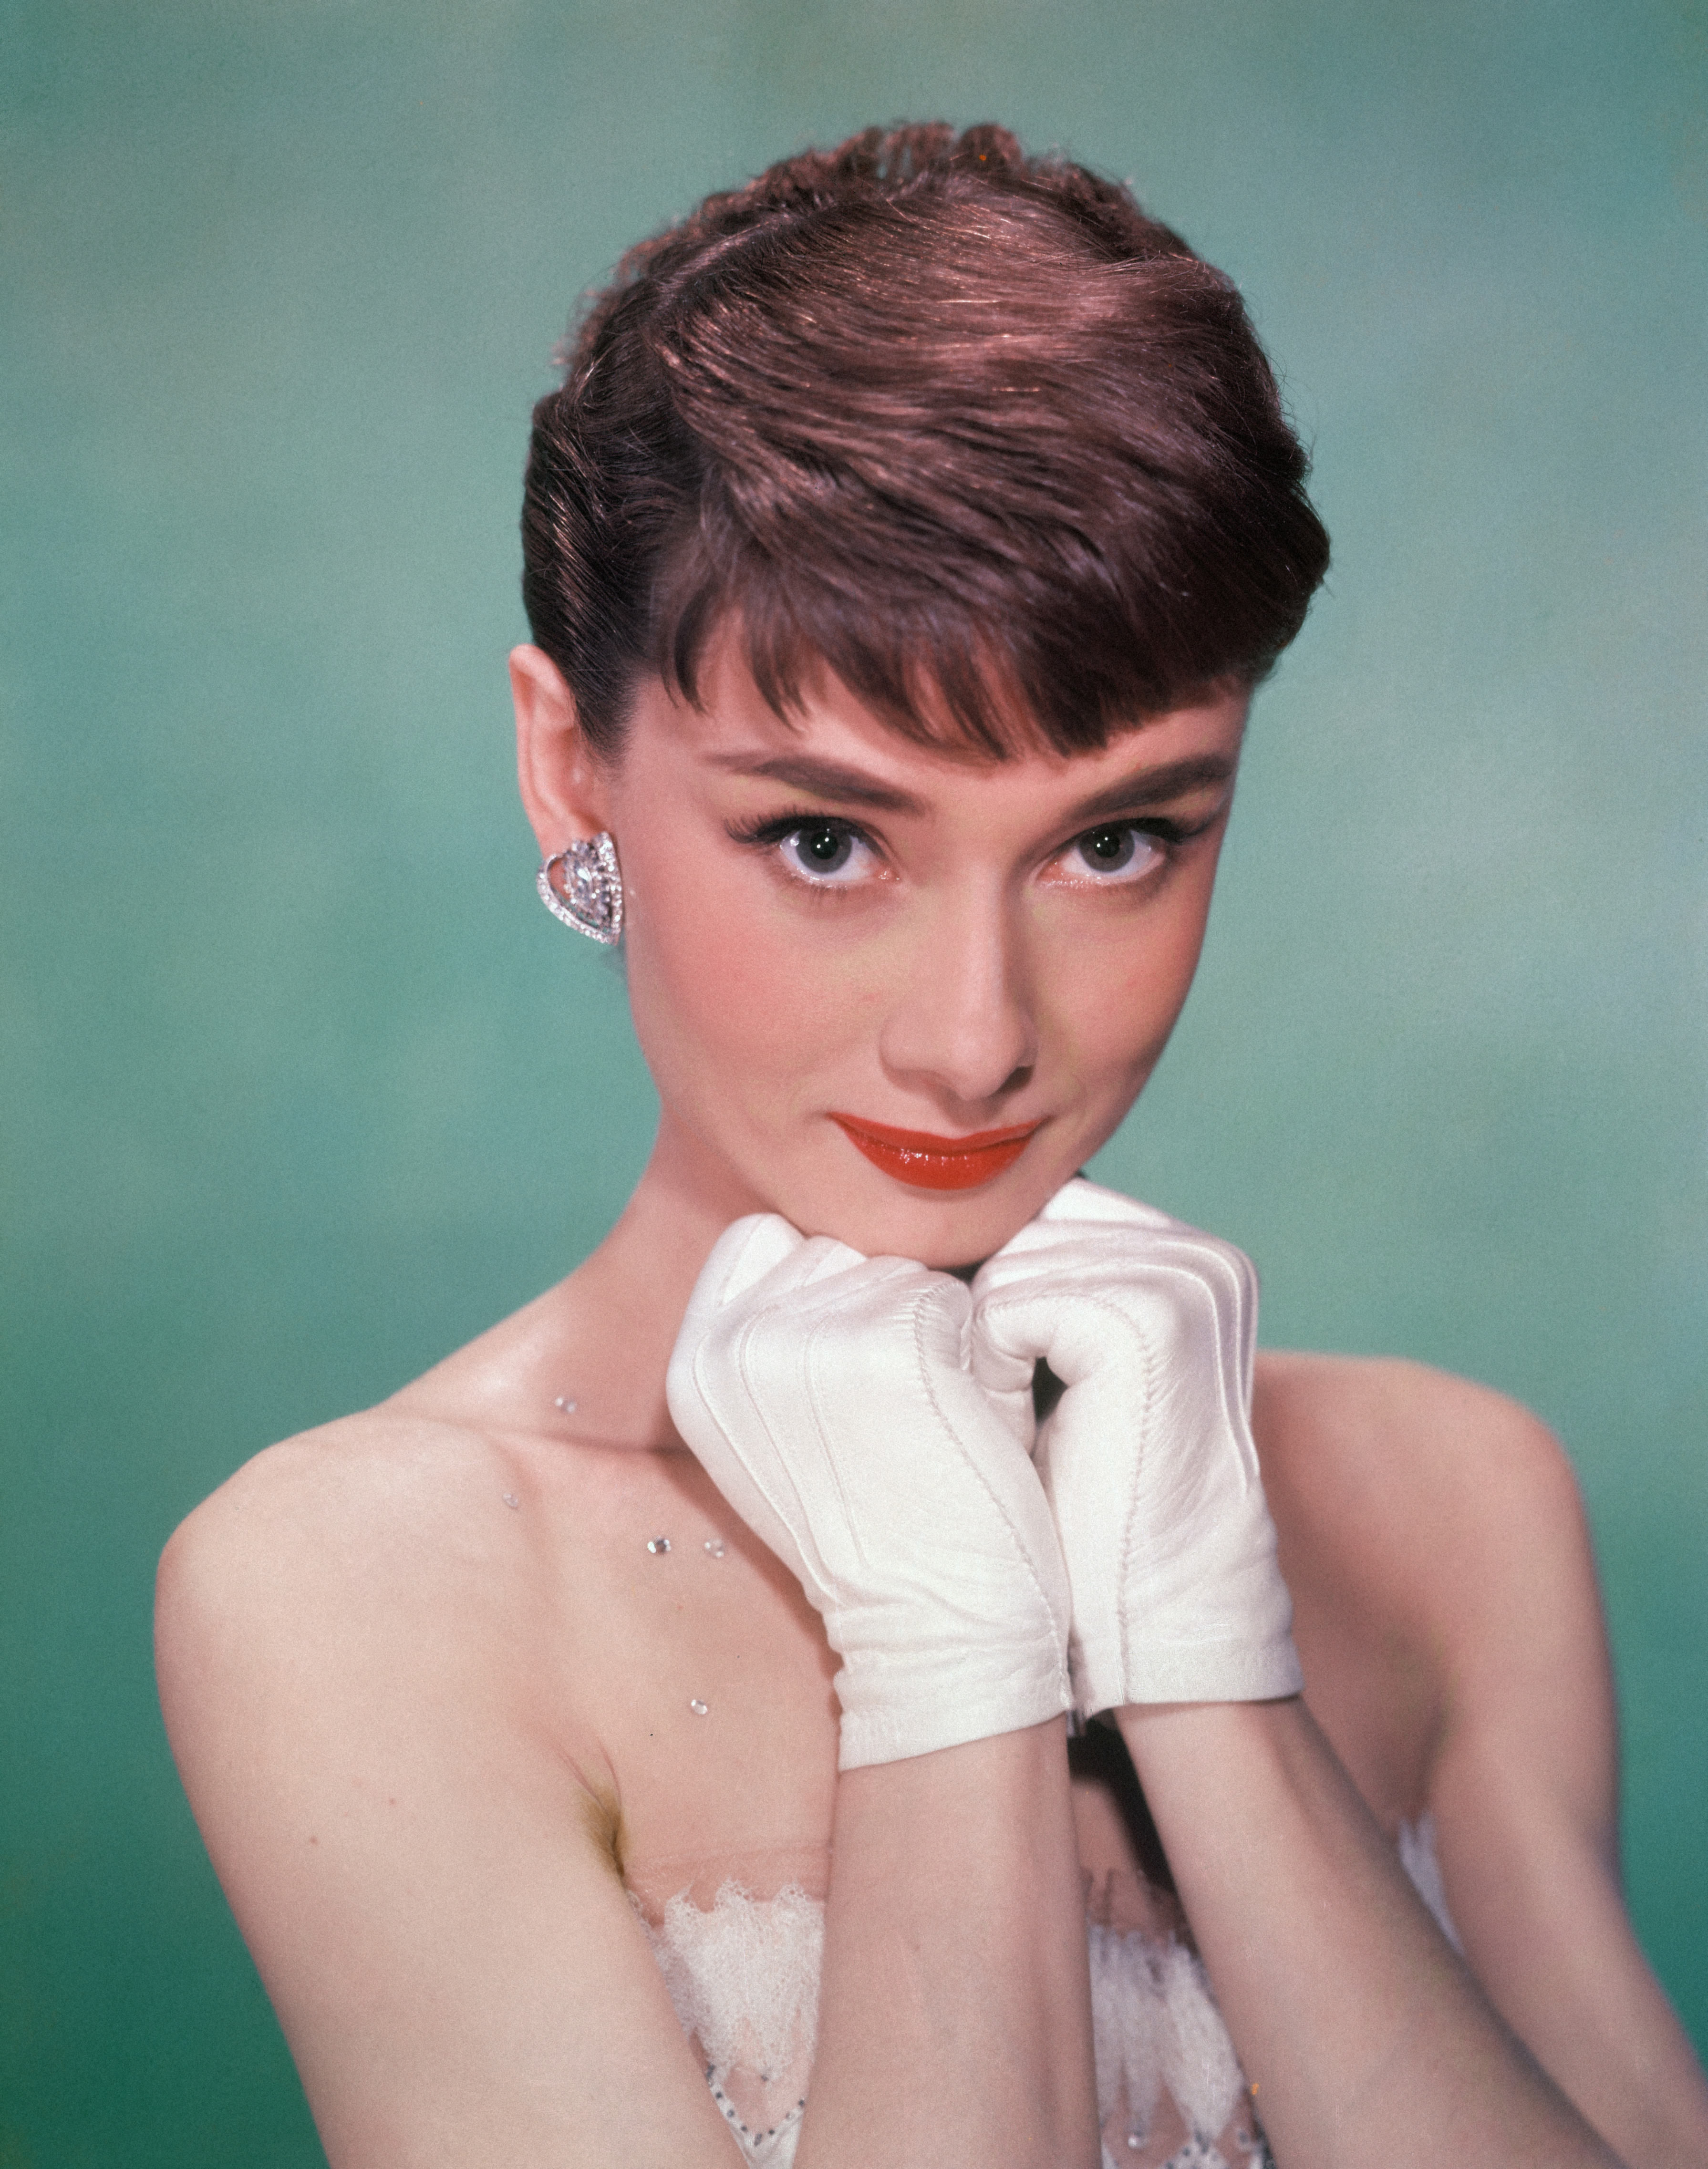 Audrey Hepburn, circa 1950s | Source: Getty Images